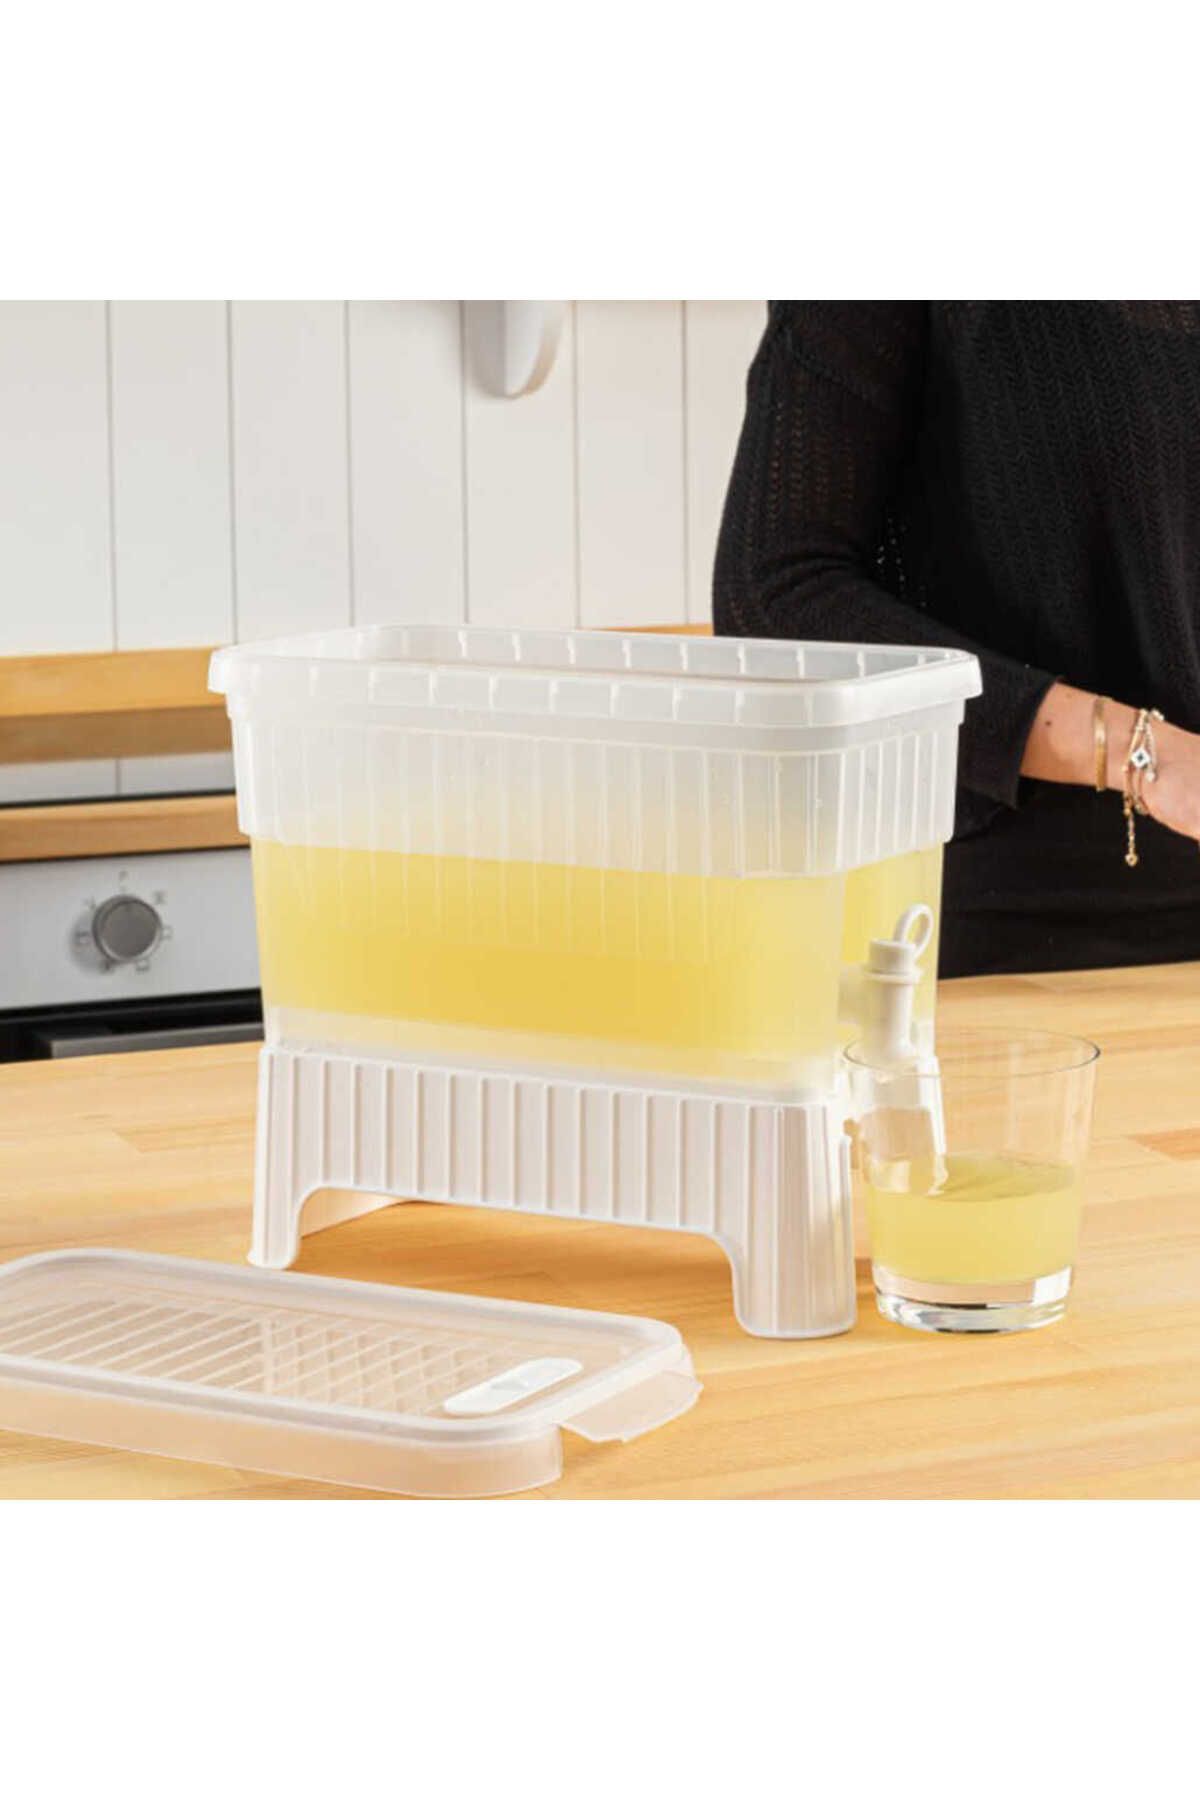 solymos Beyaz Buzdolabı İçi Musluklu Ayaklı Su -Limonata - İçecek Sebili Piknik Bidonu 4 LT (4251)